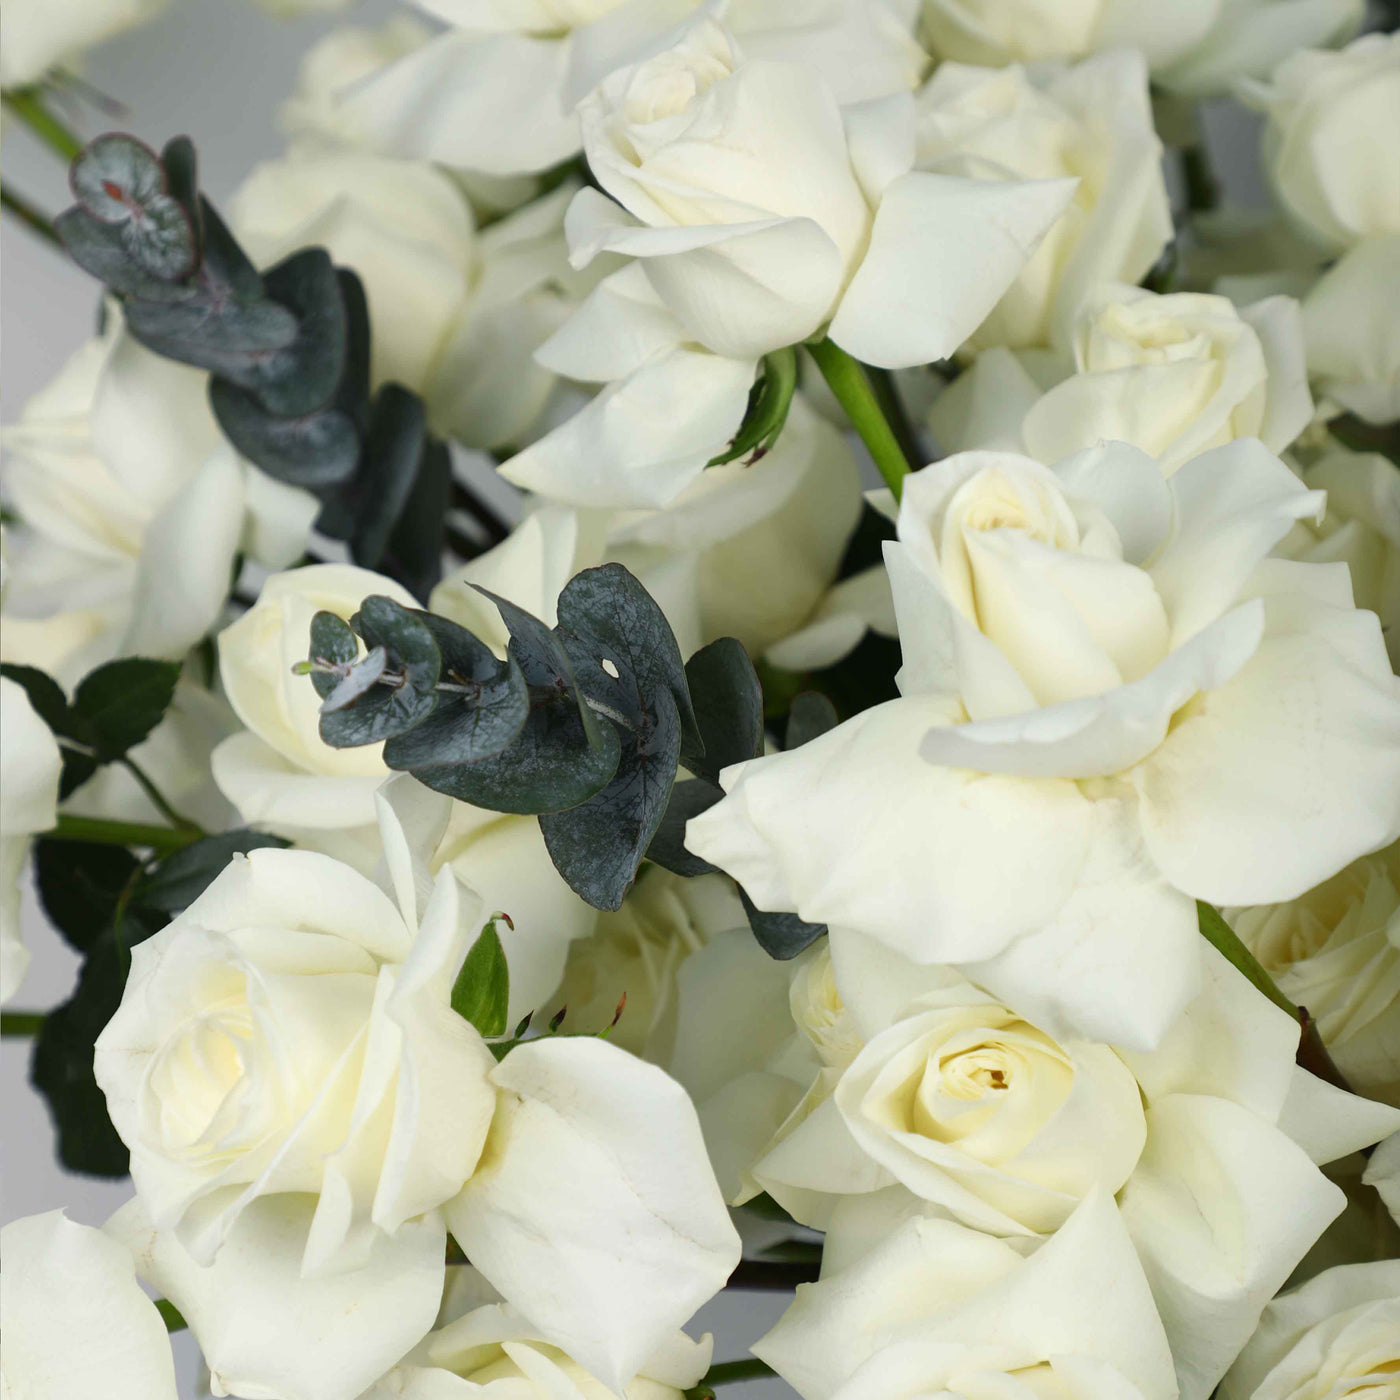 50 White Roses in Box - Fresh Flowers